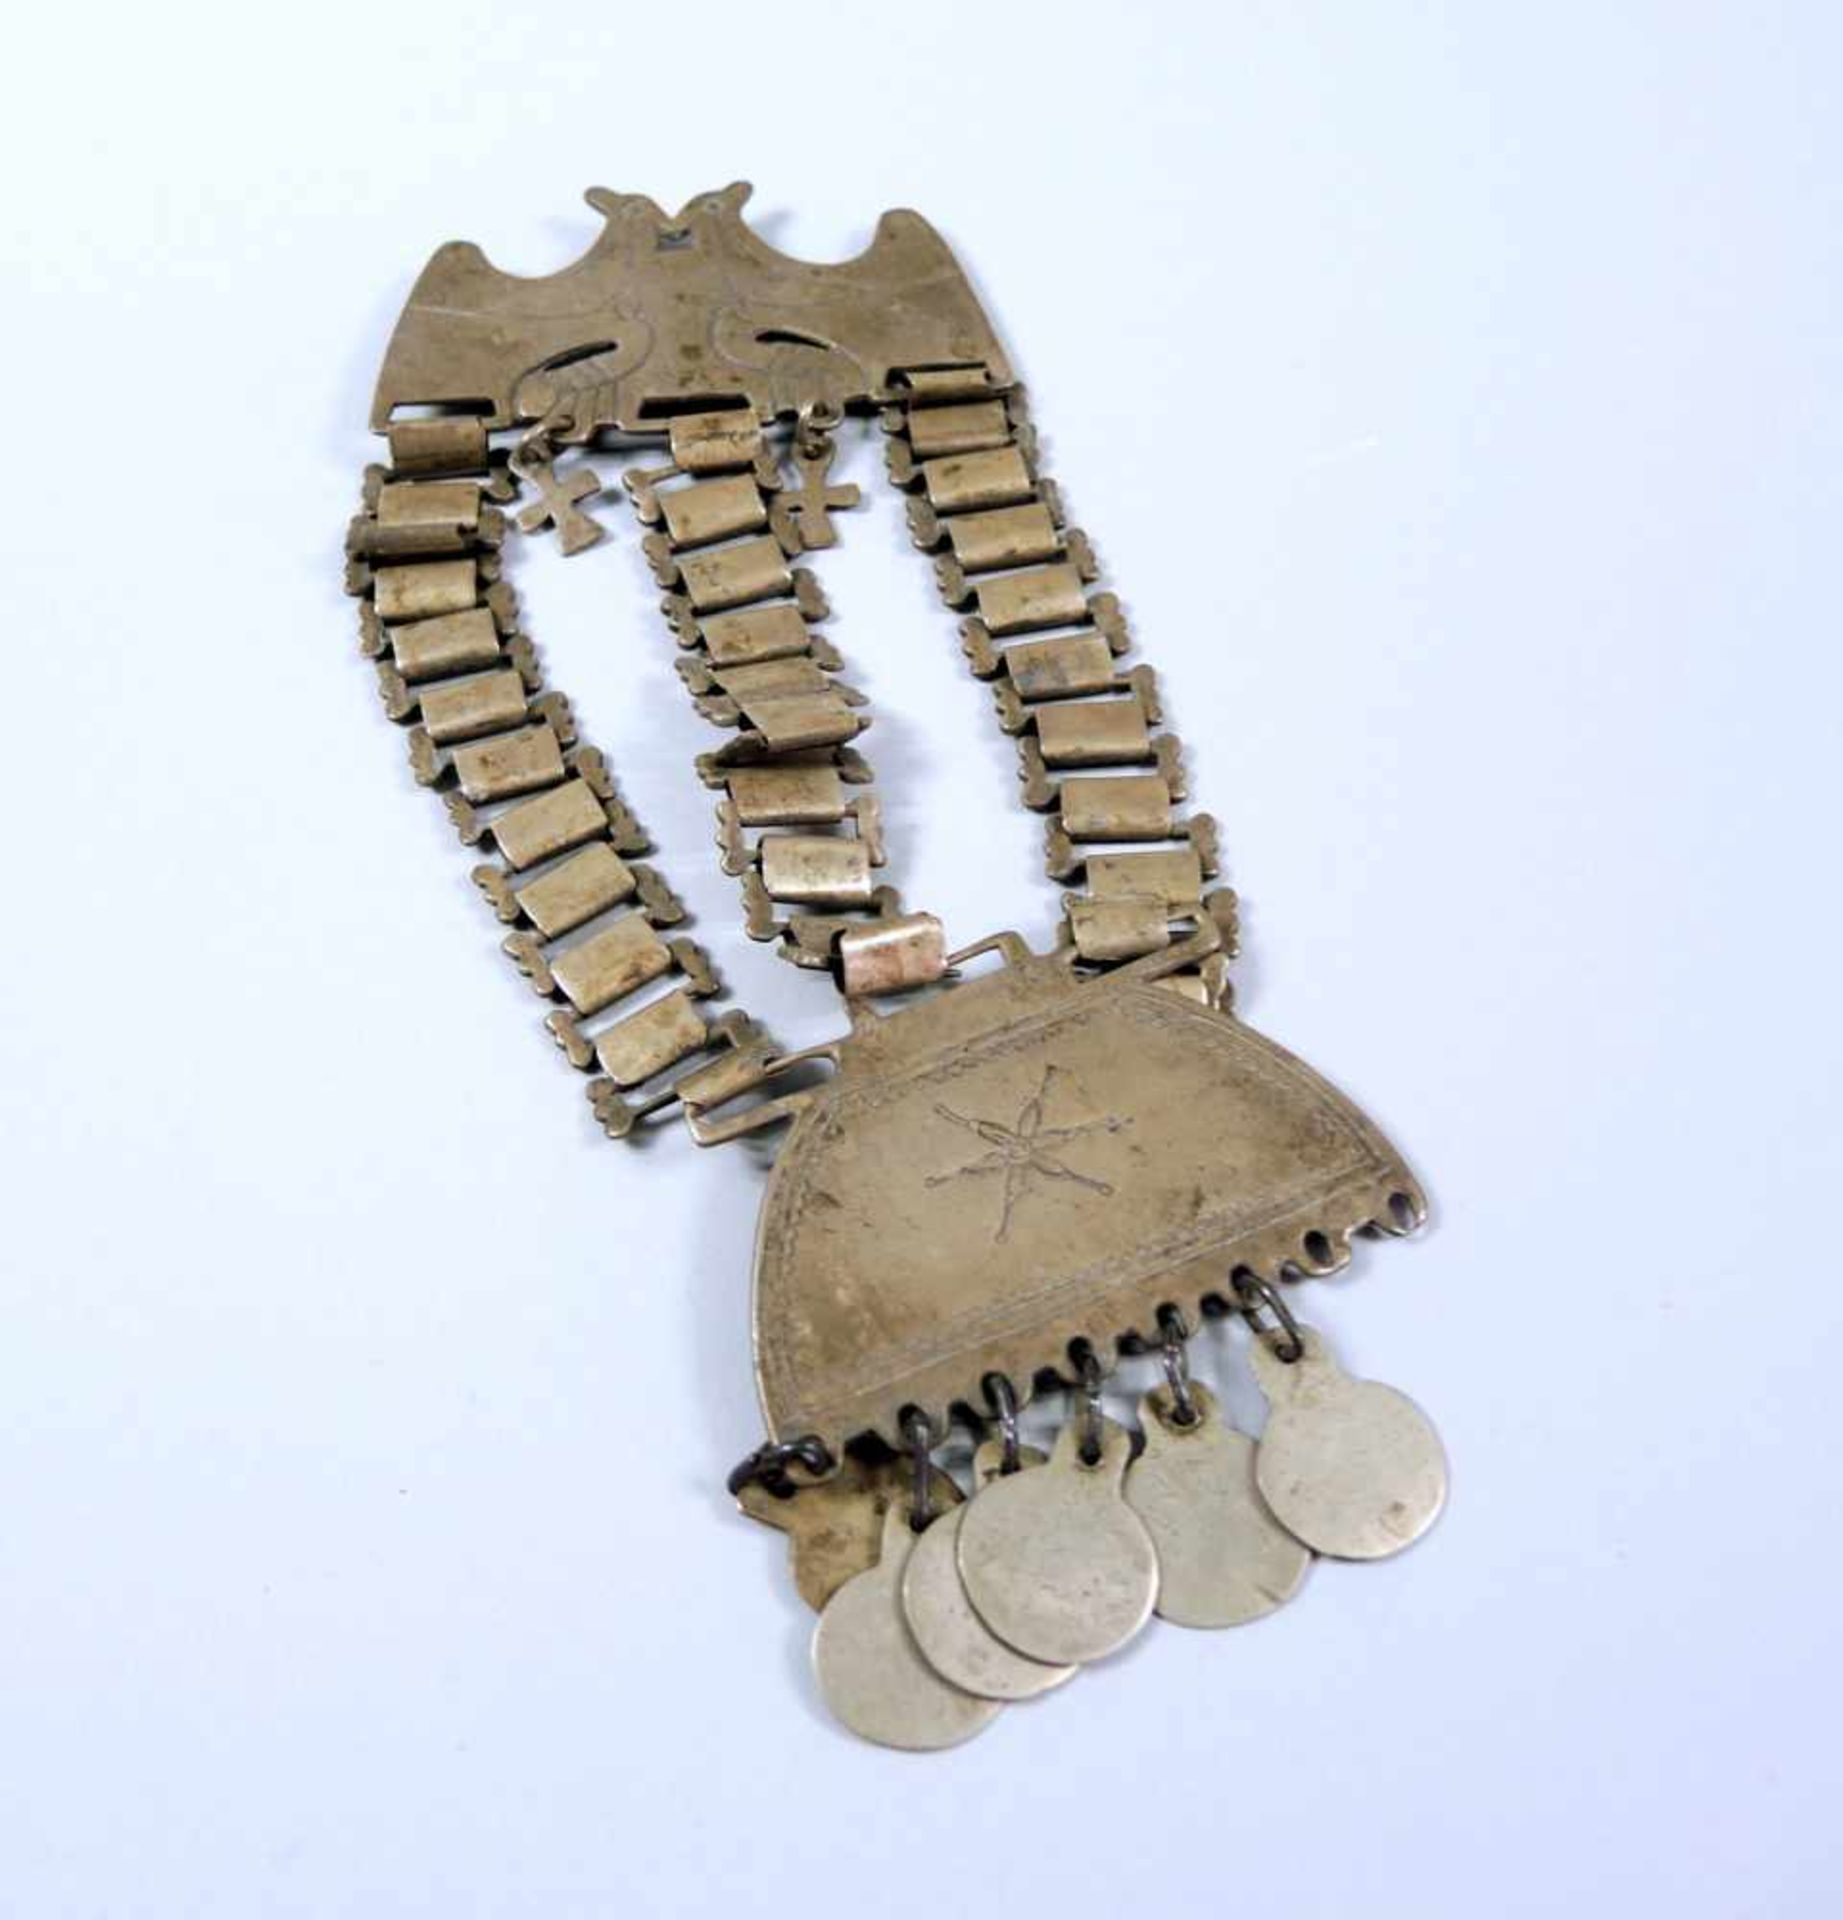 Brautschmuck Neusilber. Brautbrosche mit Kreuzen, hängenden Münzen und gravierter Plakette mit Vögel